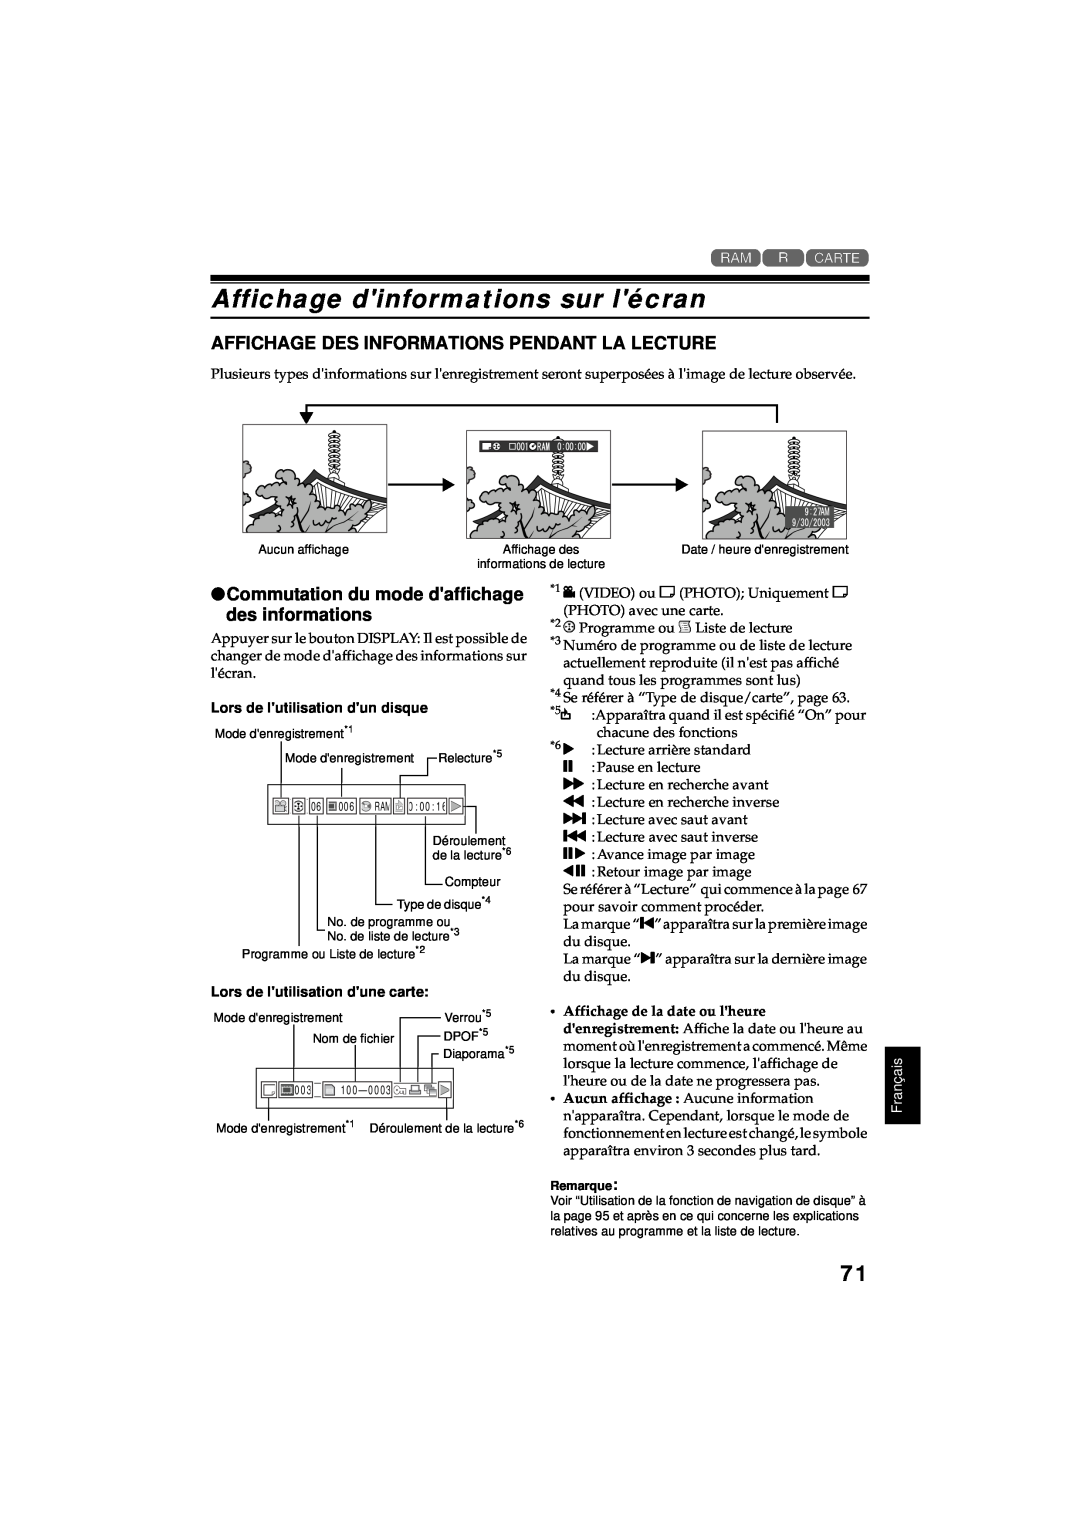 Hitachi DZ-MV380A manual Affichage dinformations sur lécran, Affichage Des Informations Pendant La Lecture, Français 